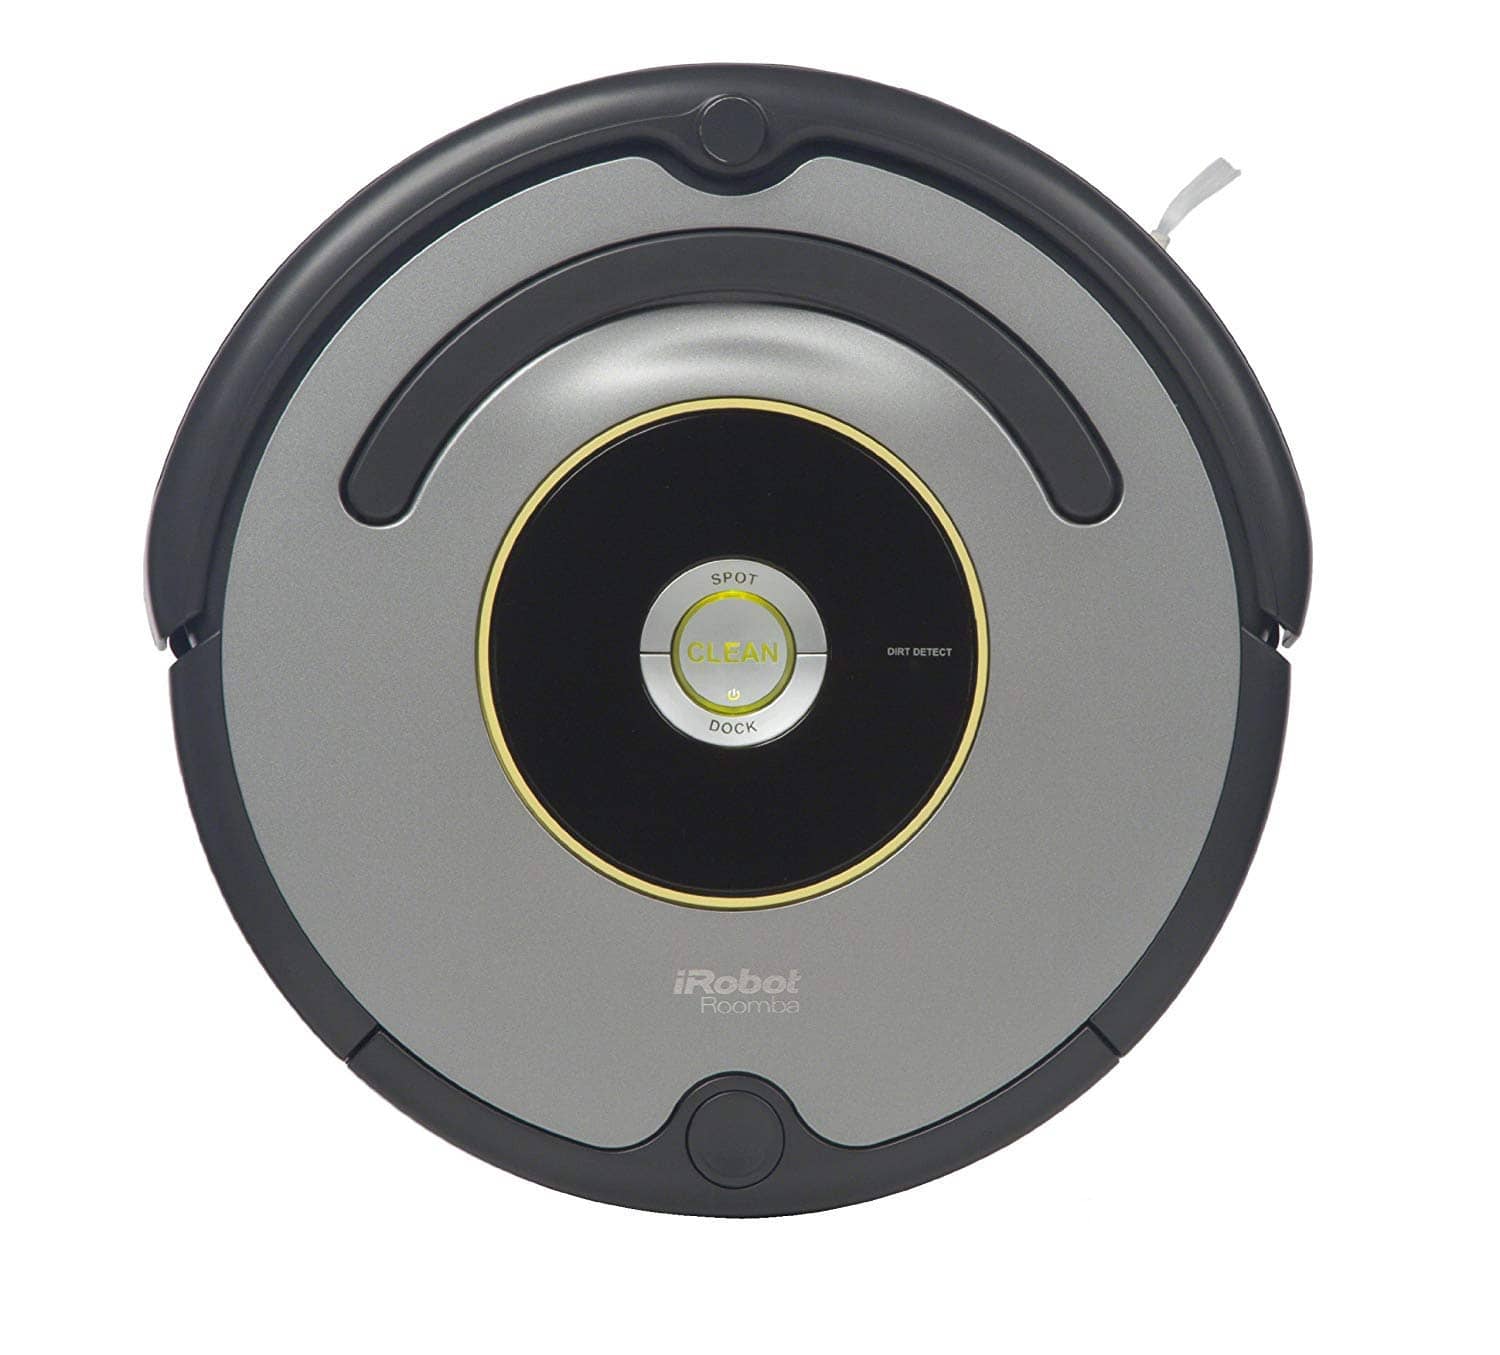 iRobot Roomba Vacuum home smart gadget